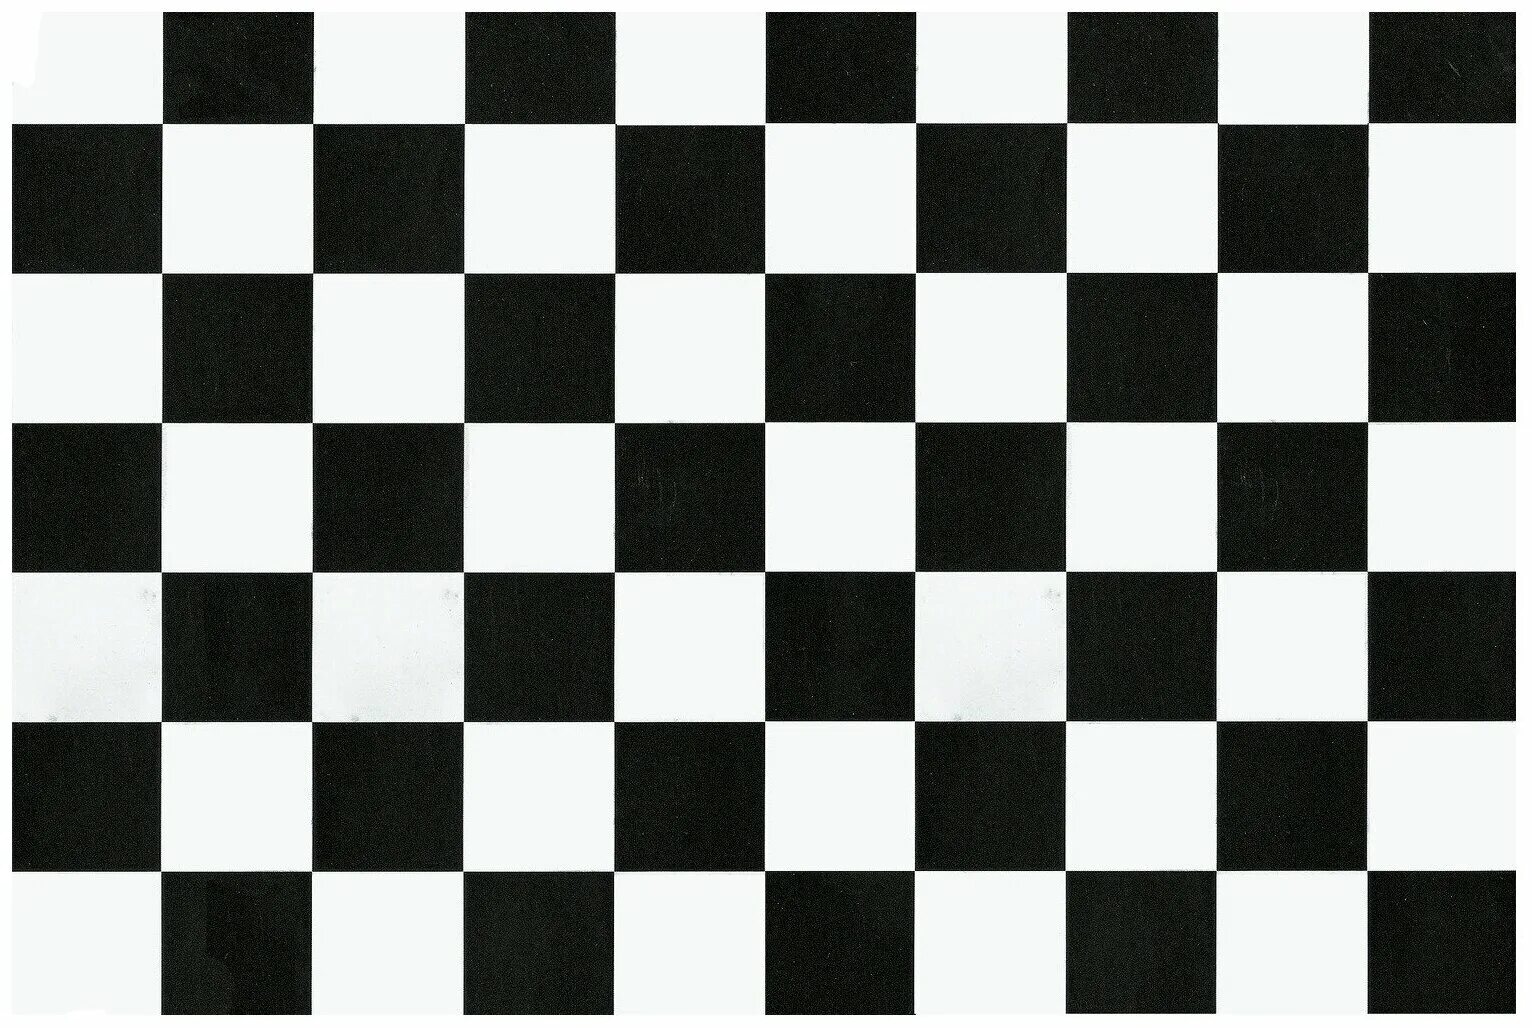 Шахматная доска 5 на 5. Линолеум IVC Eco Alicante 599. Поле для шашек ин-1829. Шахматная доска 2д. Черно белая клетка.